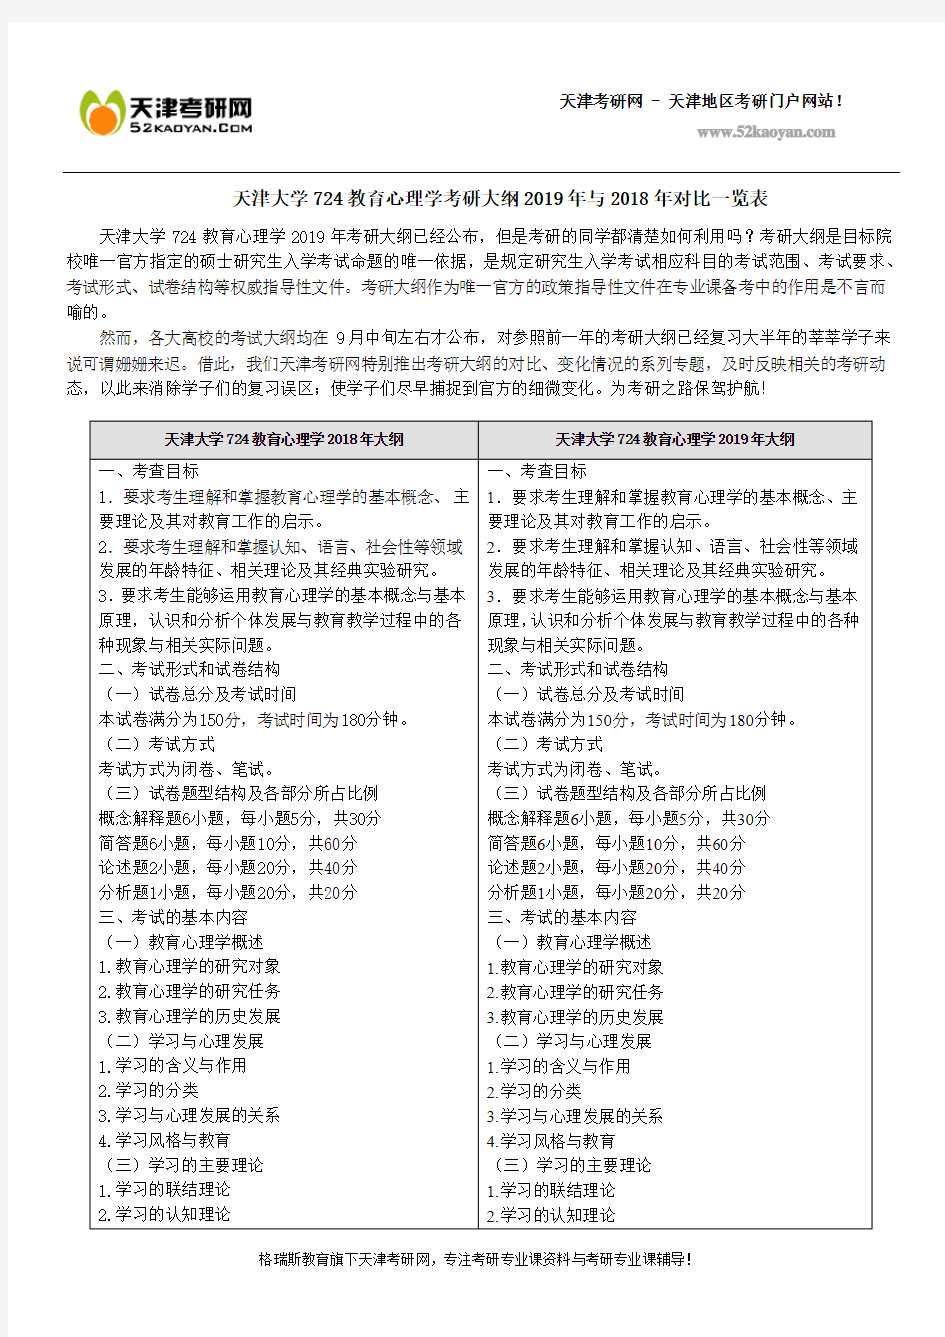 天津大学724教育心理学考研大纲2019年与2018年对比一览表